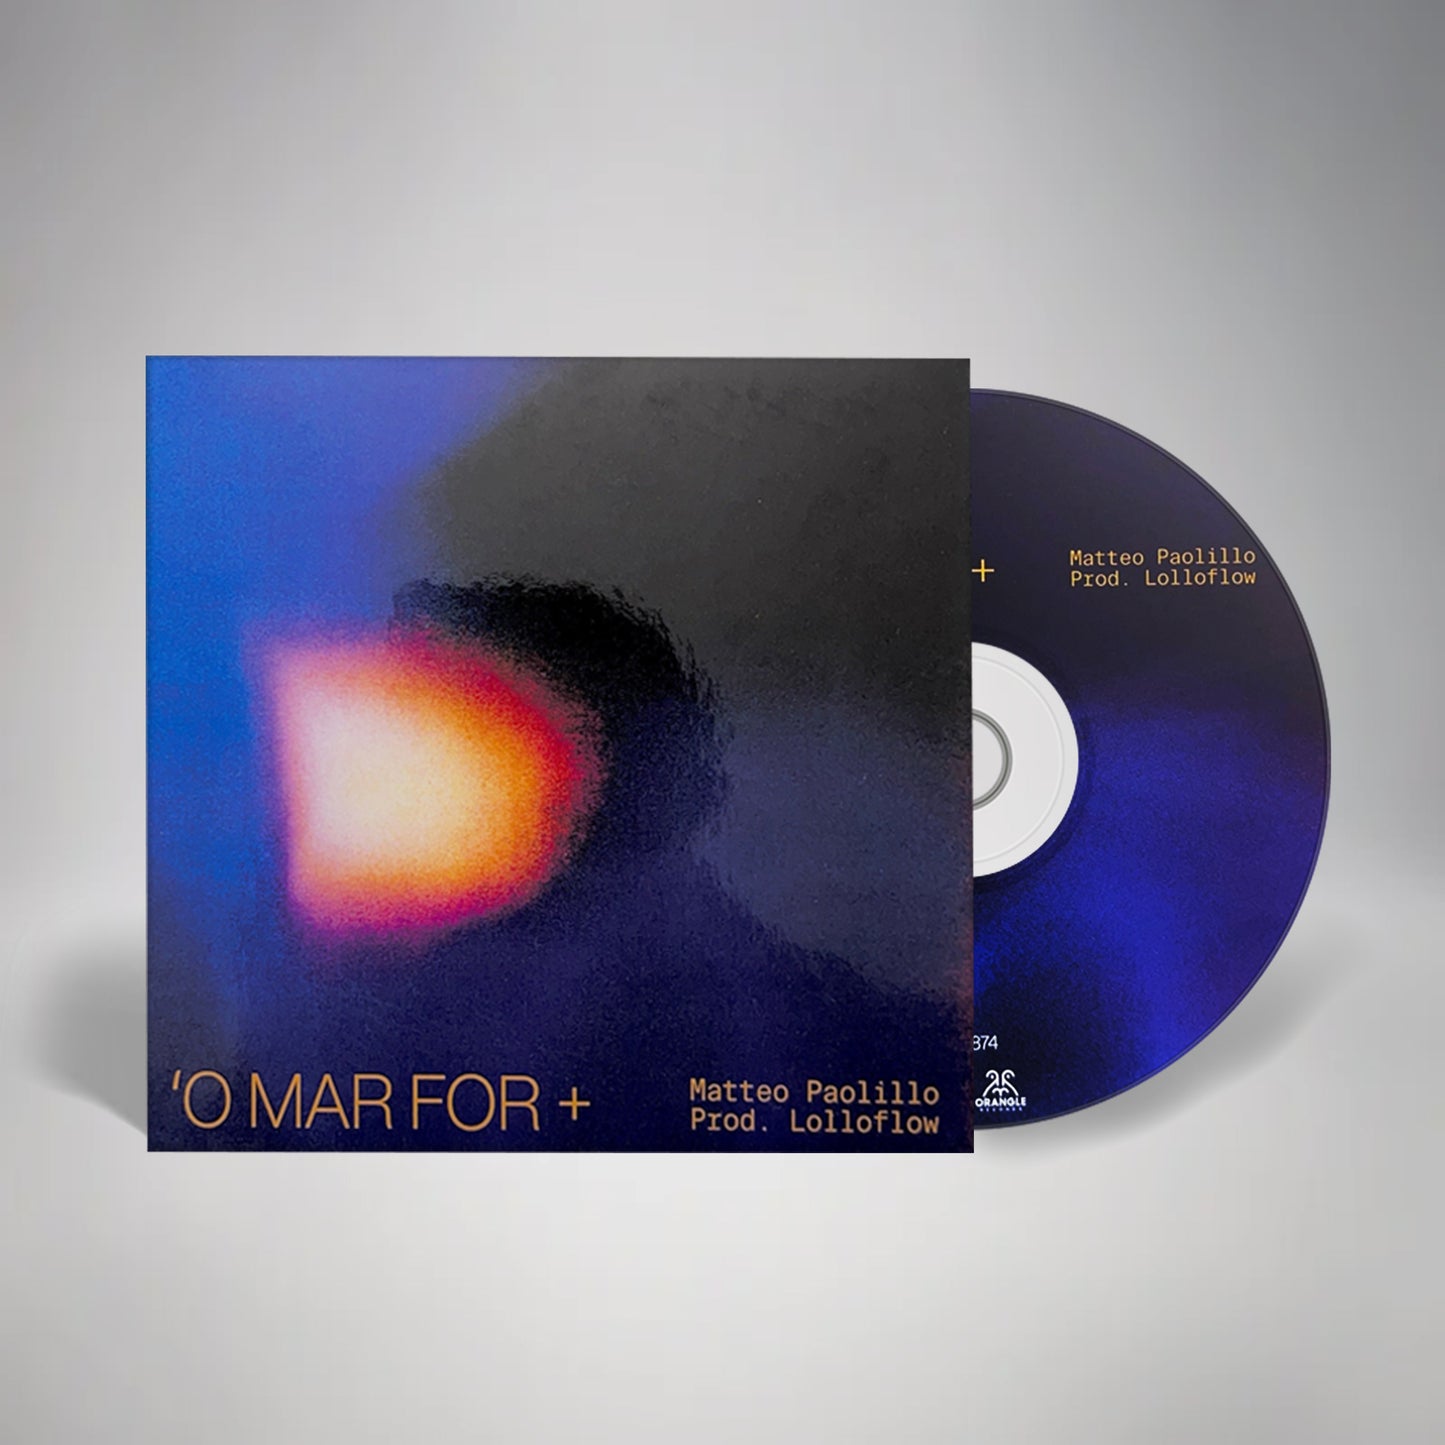 CD Autografato Matteo Paolillo "O MAR FOR +"